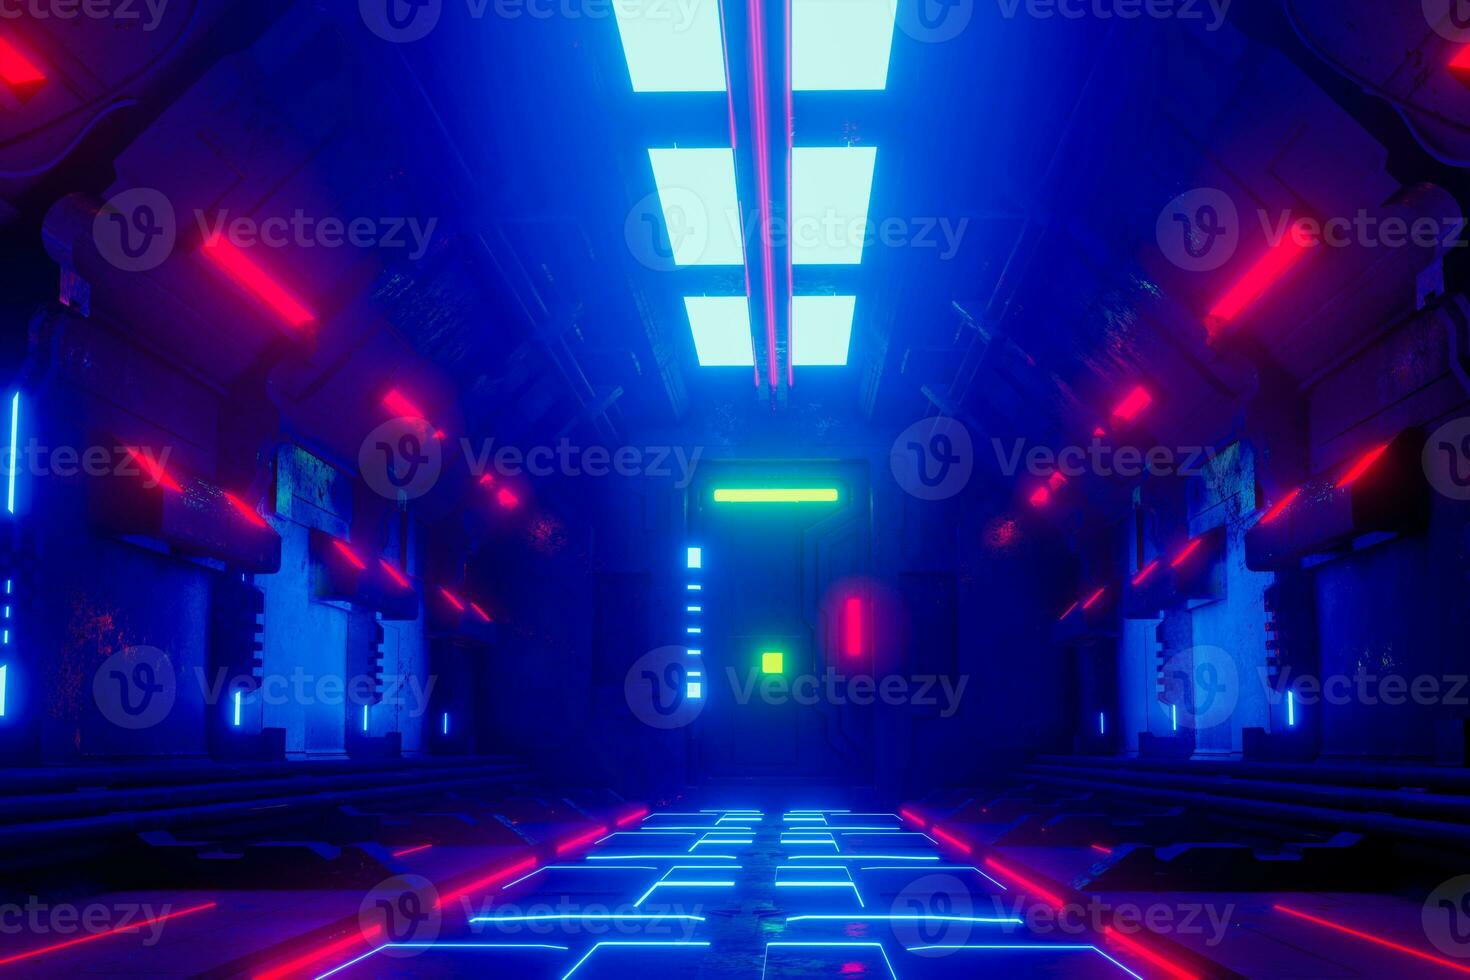 fantascienza grunge corridoio sfondo illuminato con neon luci 3d rendere foto